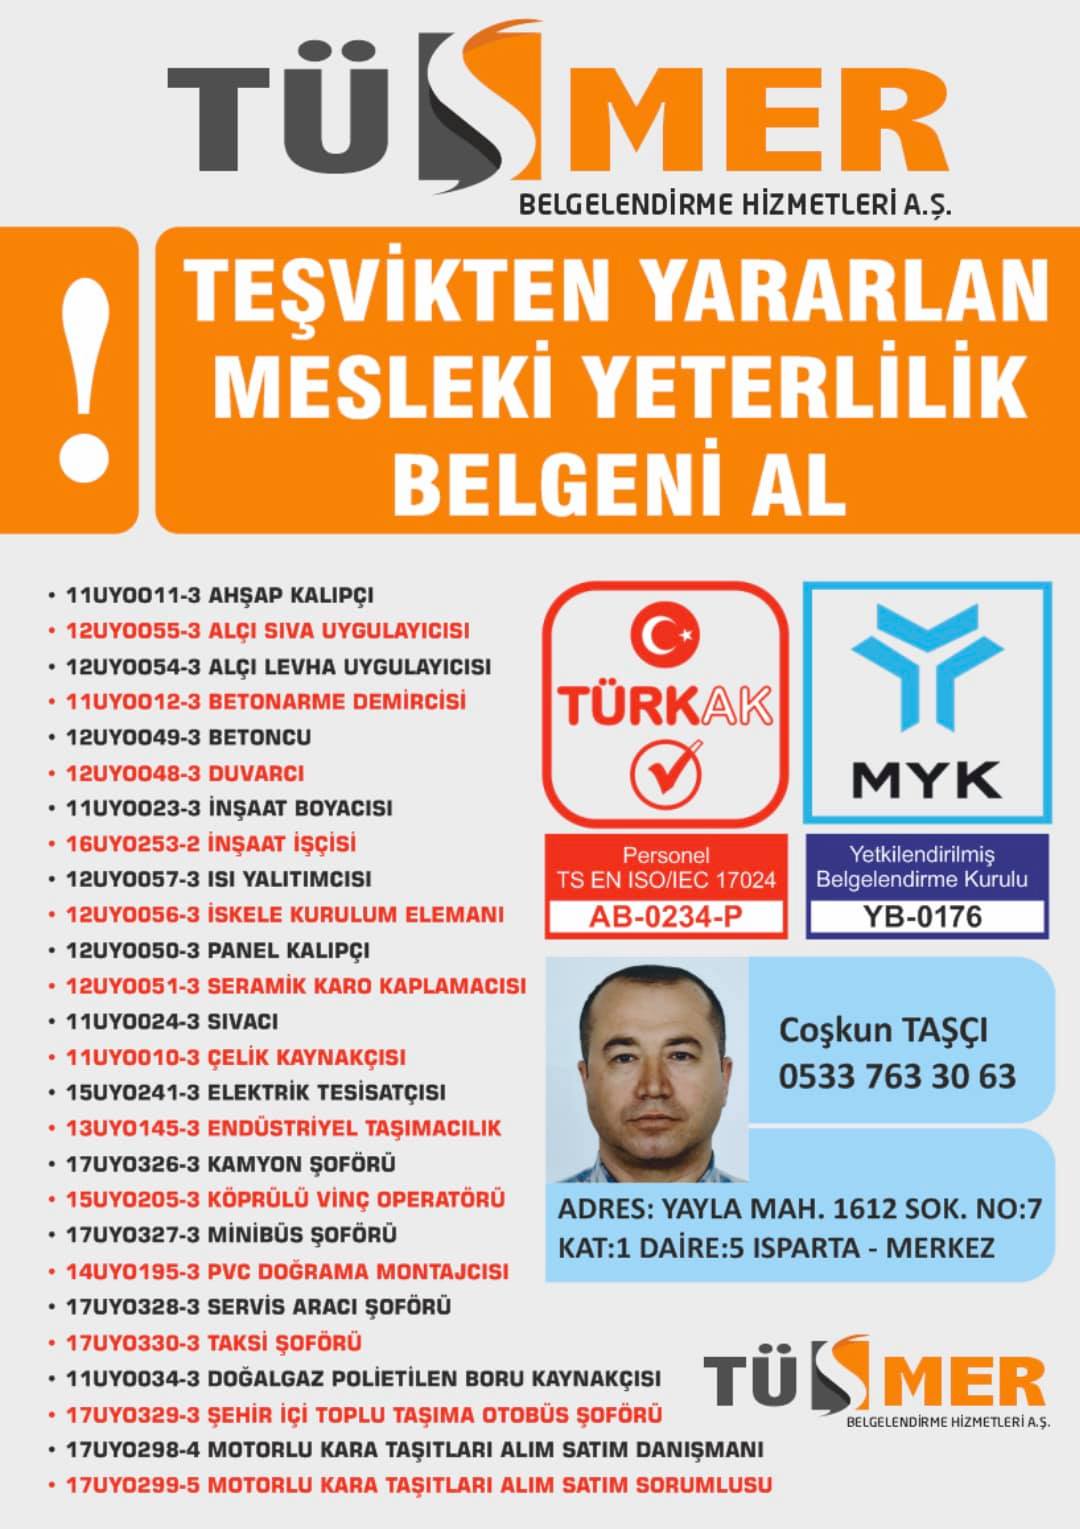 MYK MESLEKİ YETERLİLİK BELGESİ Büyükbakkalköy Maltepe İstanbul